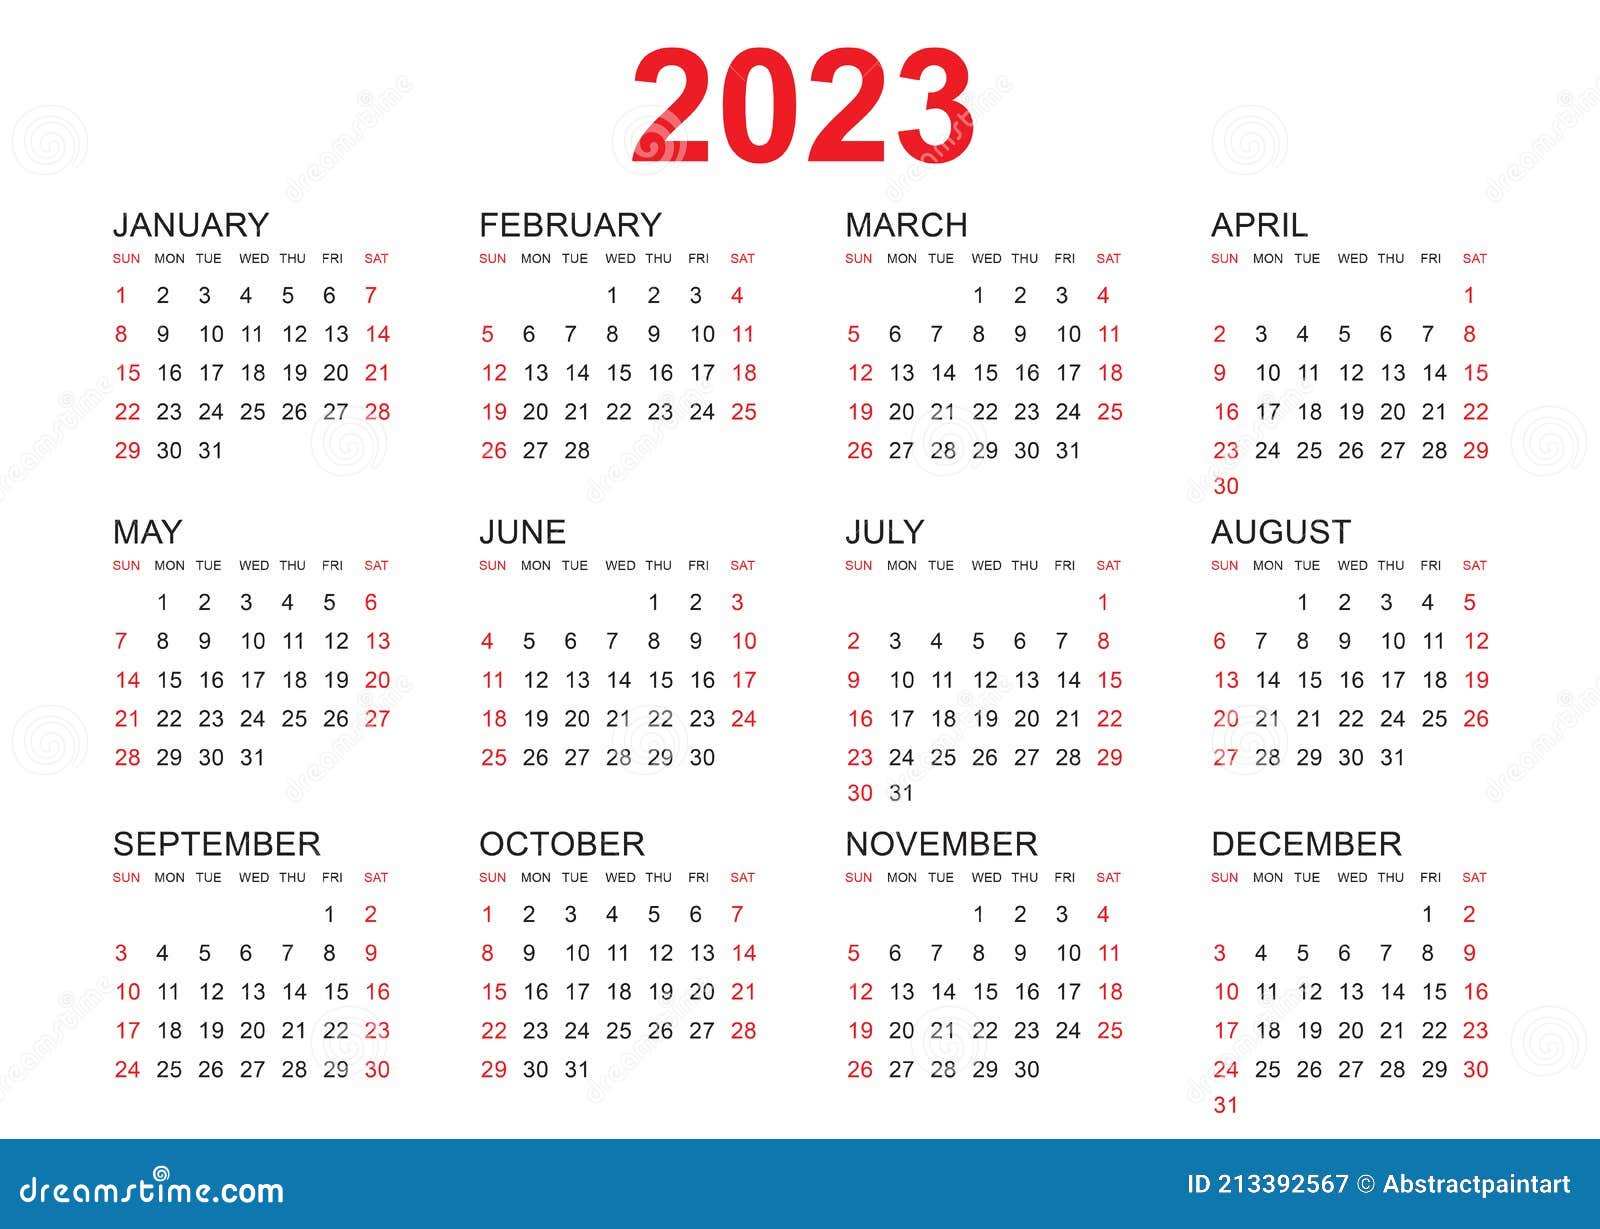 2023-year-planner-wall-chart-calendar-holidays-staff-office-widest